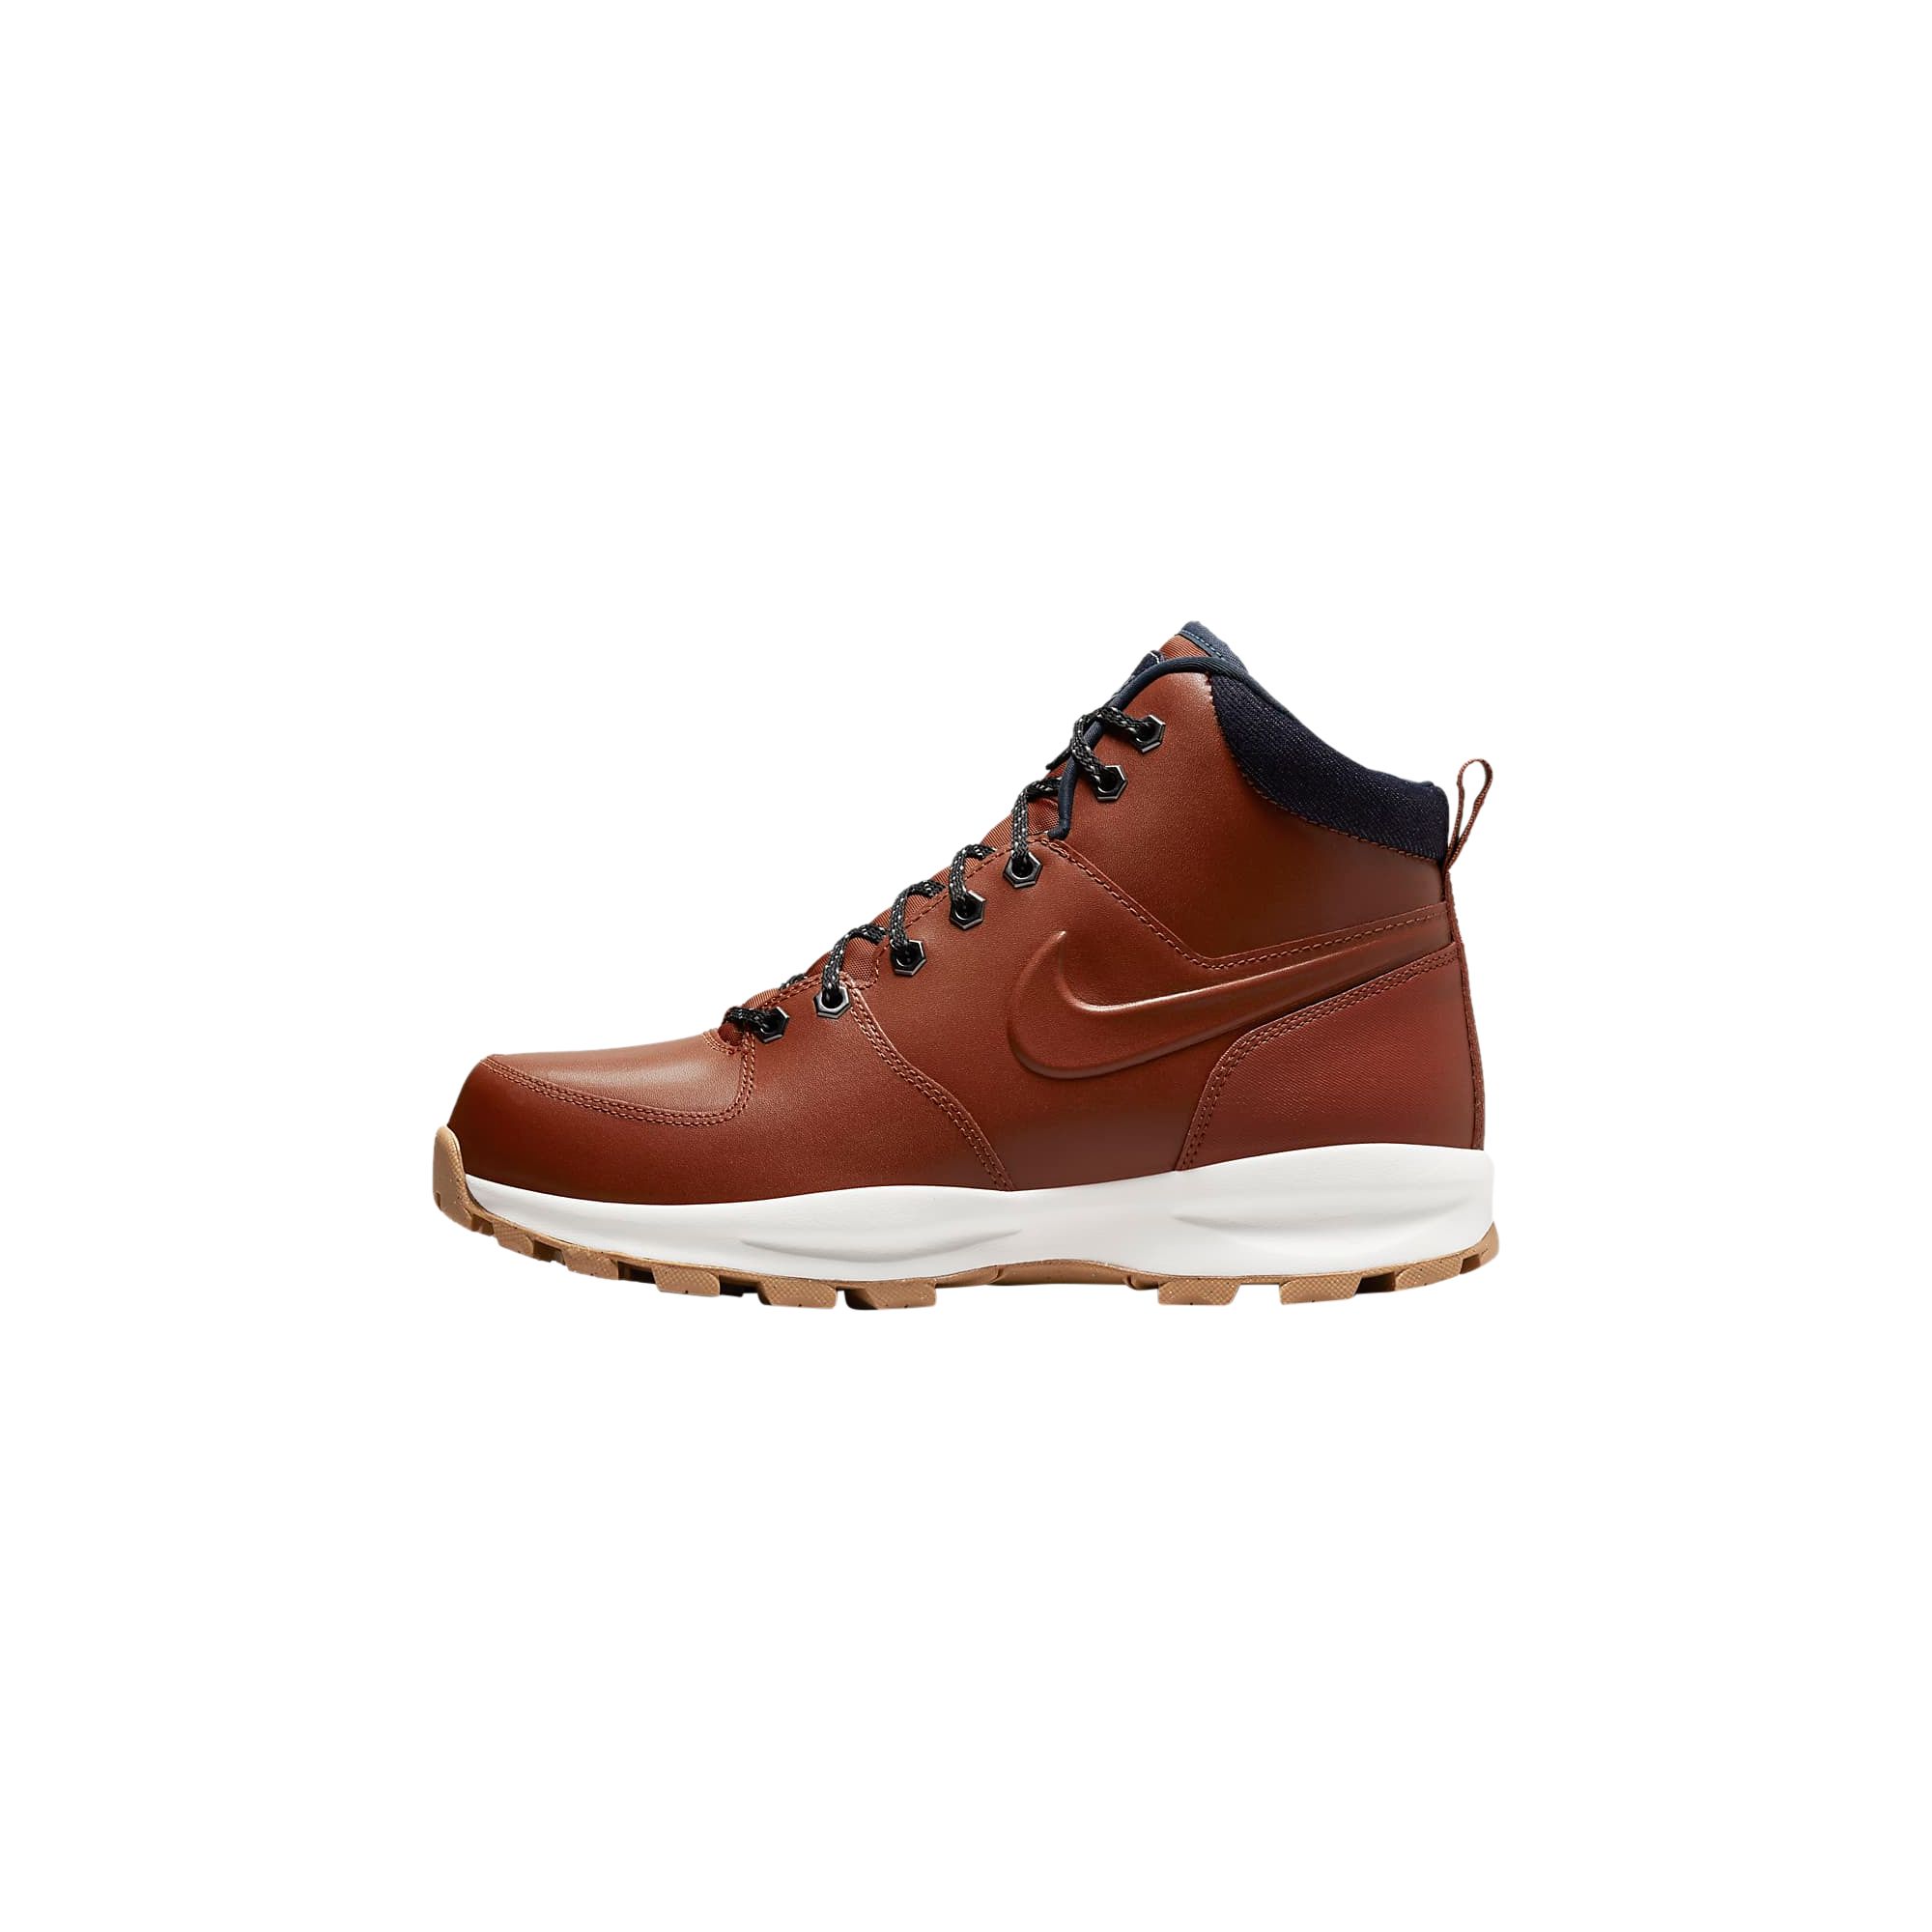 Manoa Leather Nike - 2286264